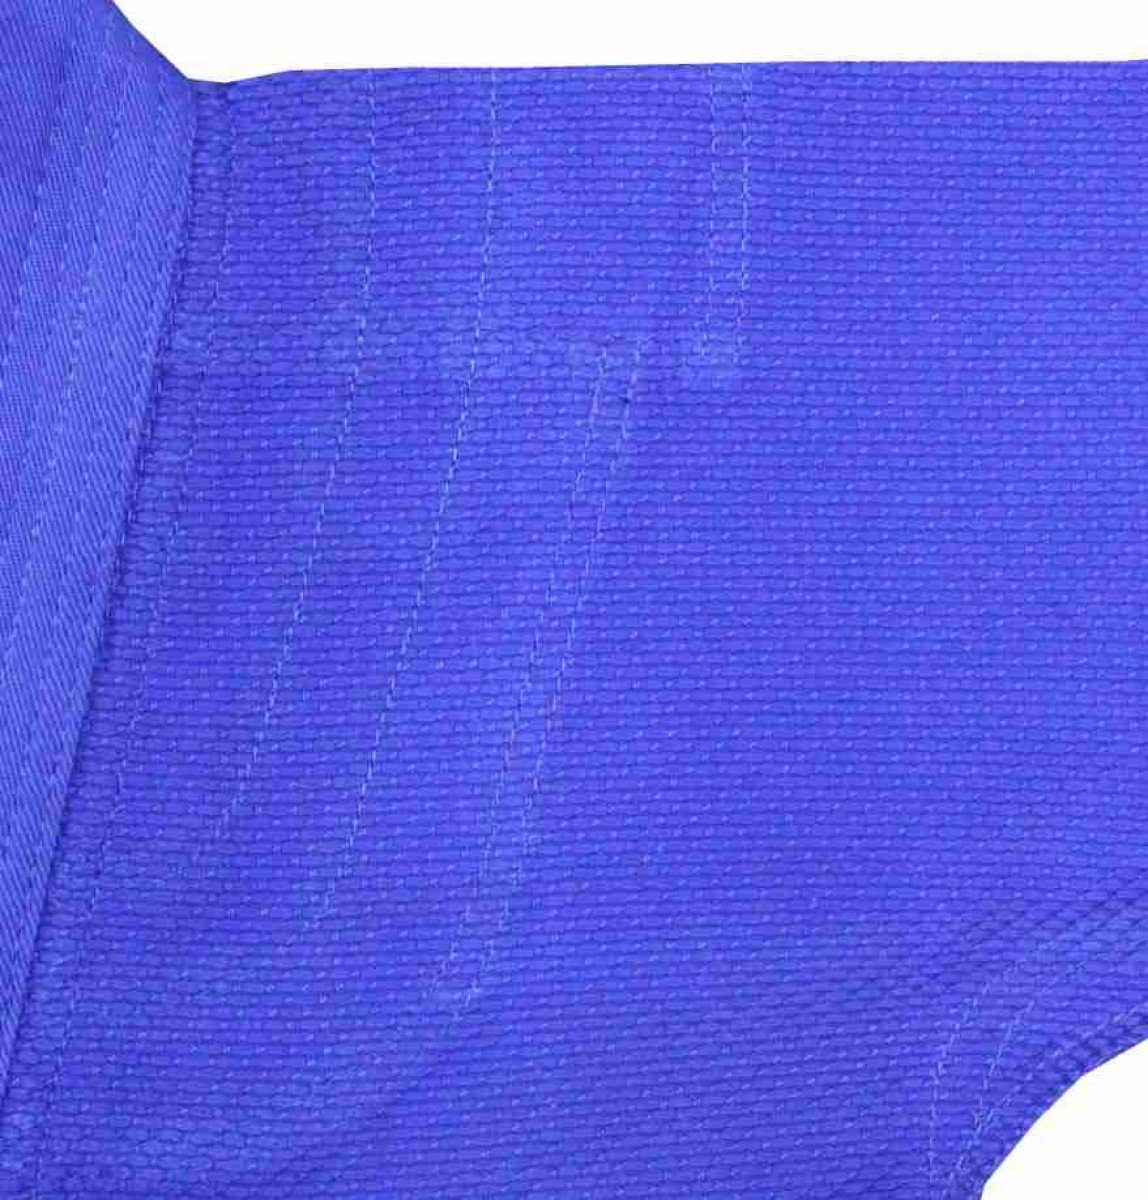 gr. Judoanzug blau mittelschwer mit SBJ 450 Jacke Reißkornwebung